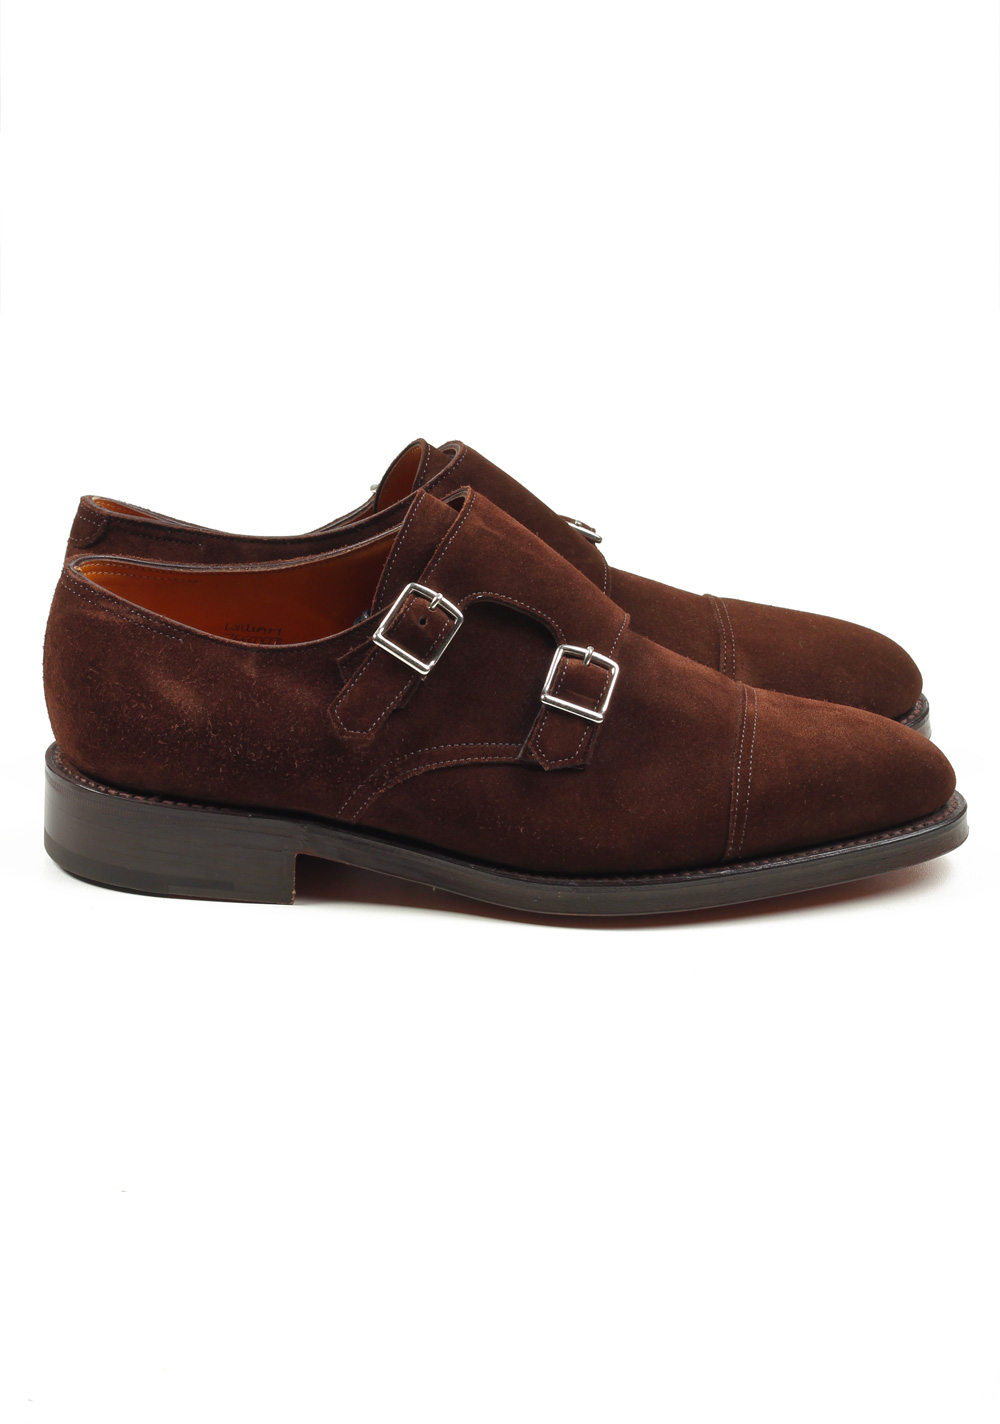 John Lobb William Brown Double Monk Strap Shoes Size 6 UK / 7 U.S. On 9795 Last | Costume Limité